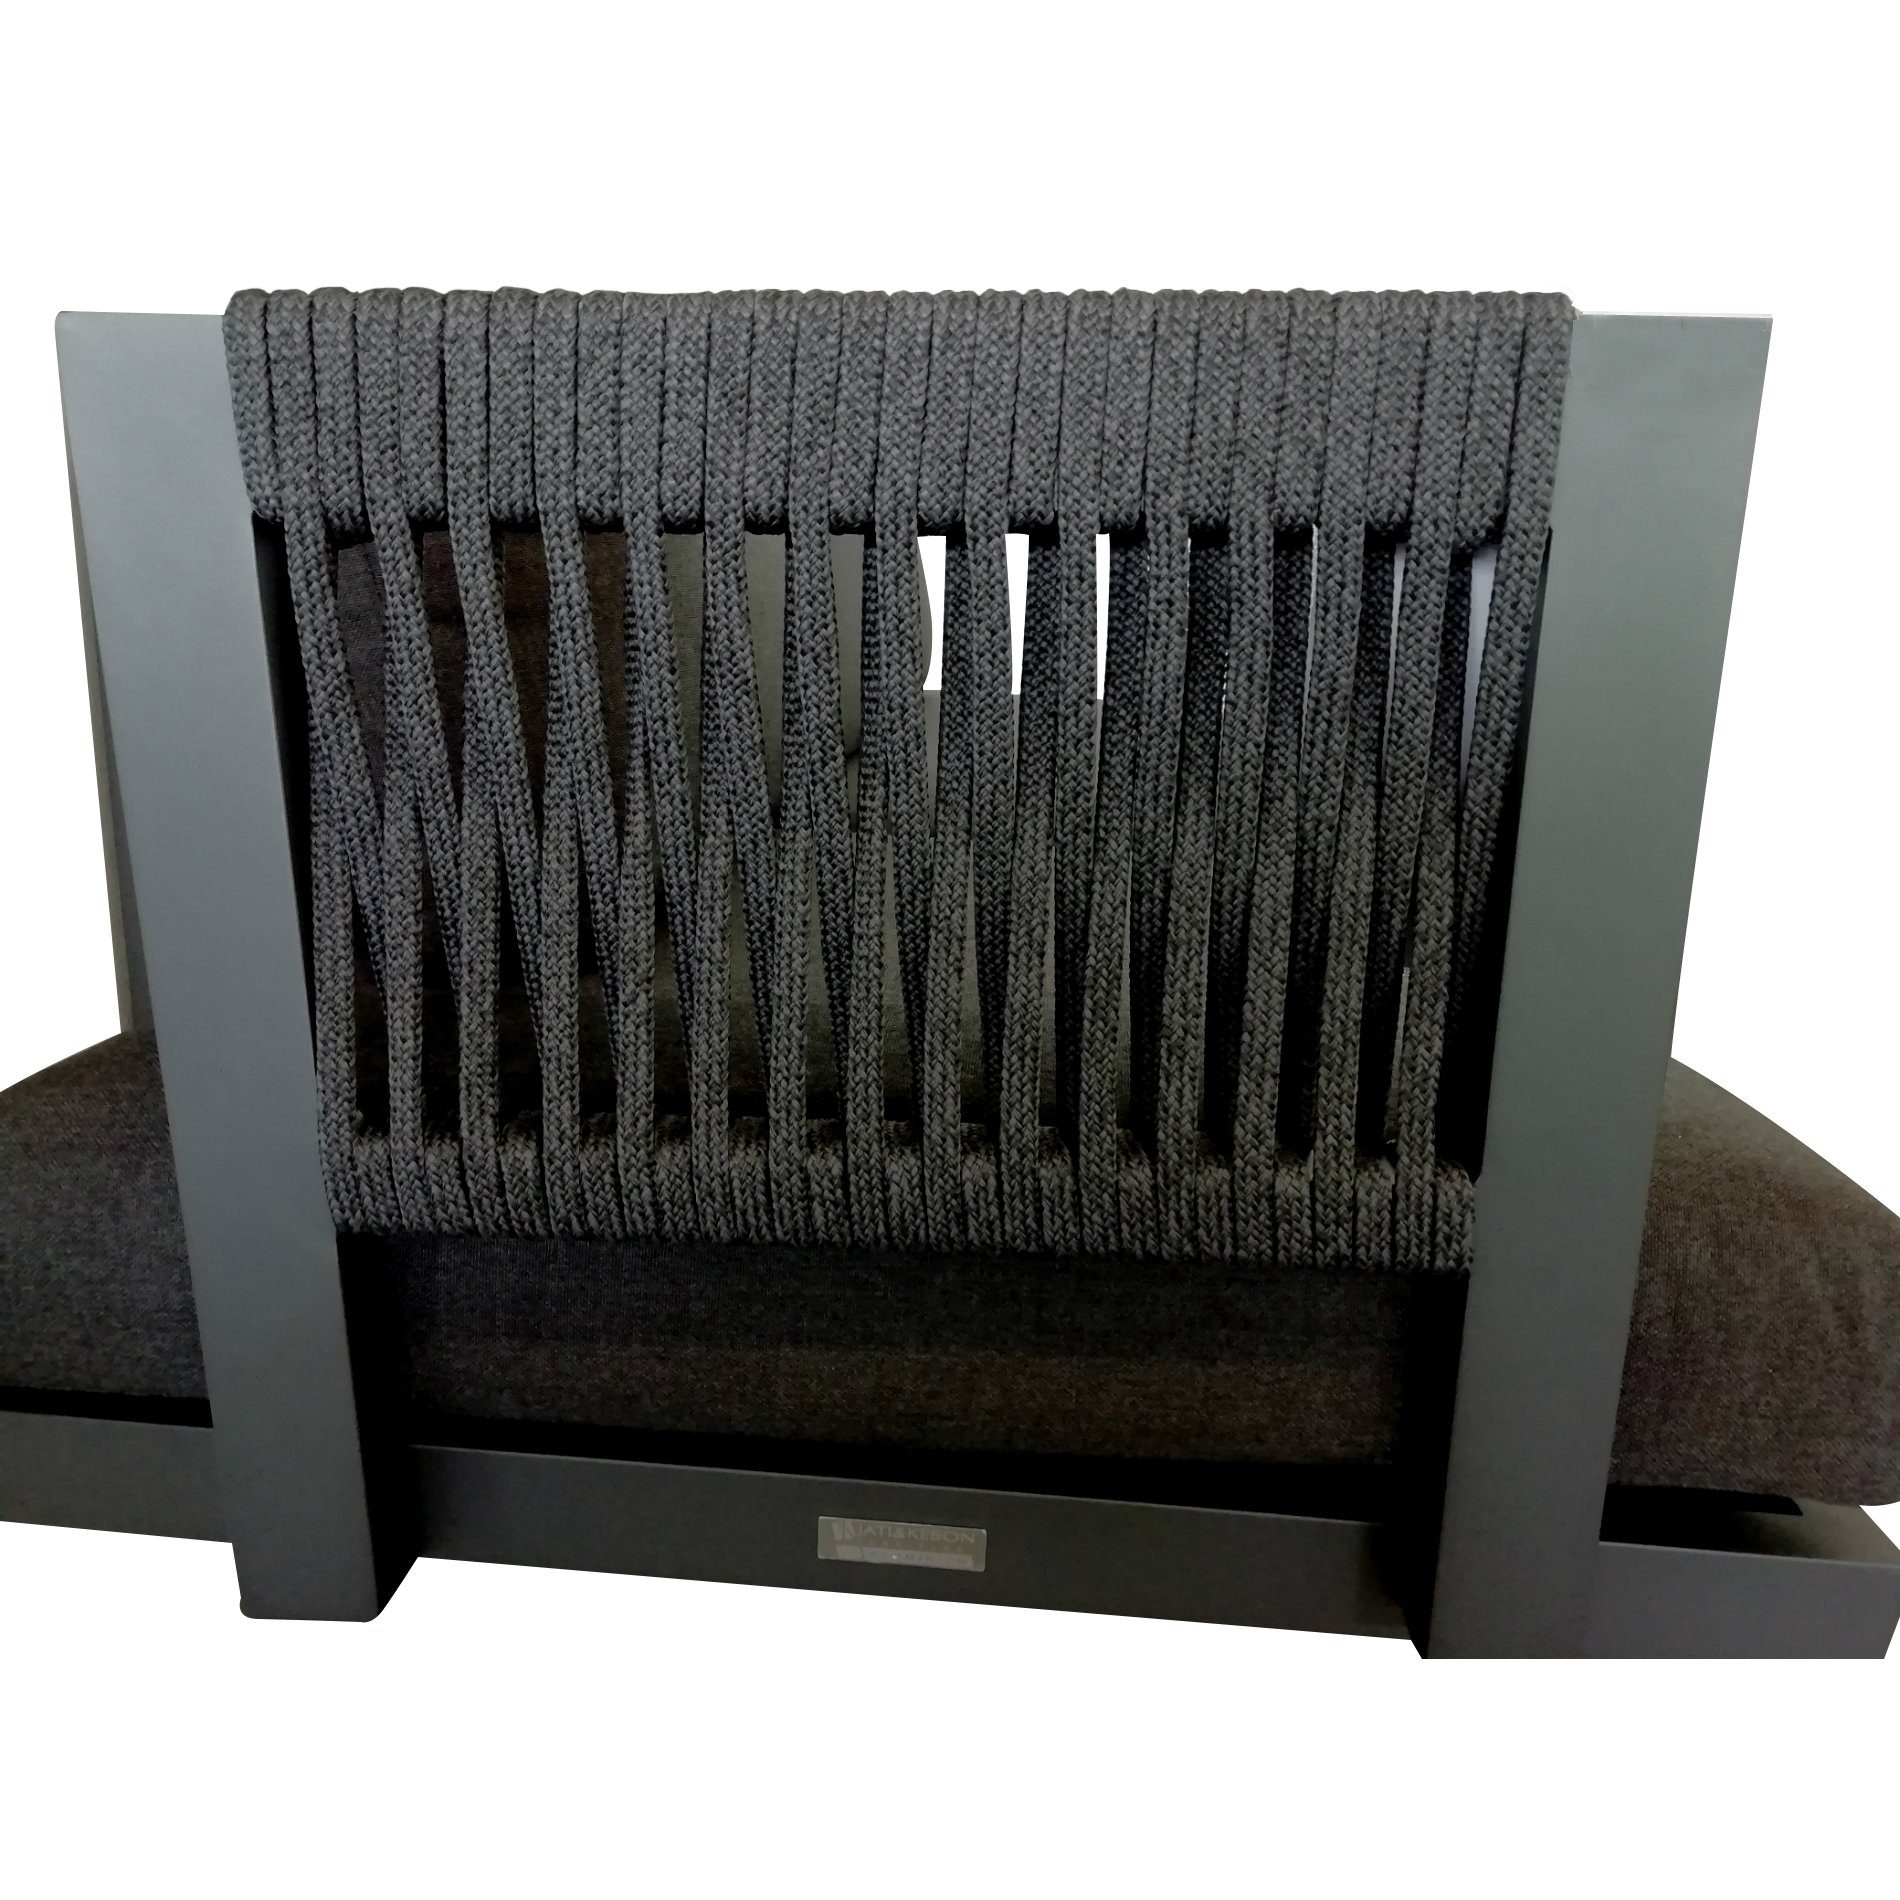 Jati&Kebon Rücken-/Armlehne für Liege bzw. 1-Sitzermodul "Rao Rope", Gestell Aluminium eisengrau (fällt im Original dunkler aus), Rope charcoal black